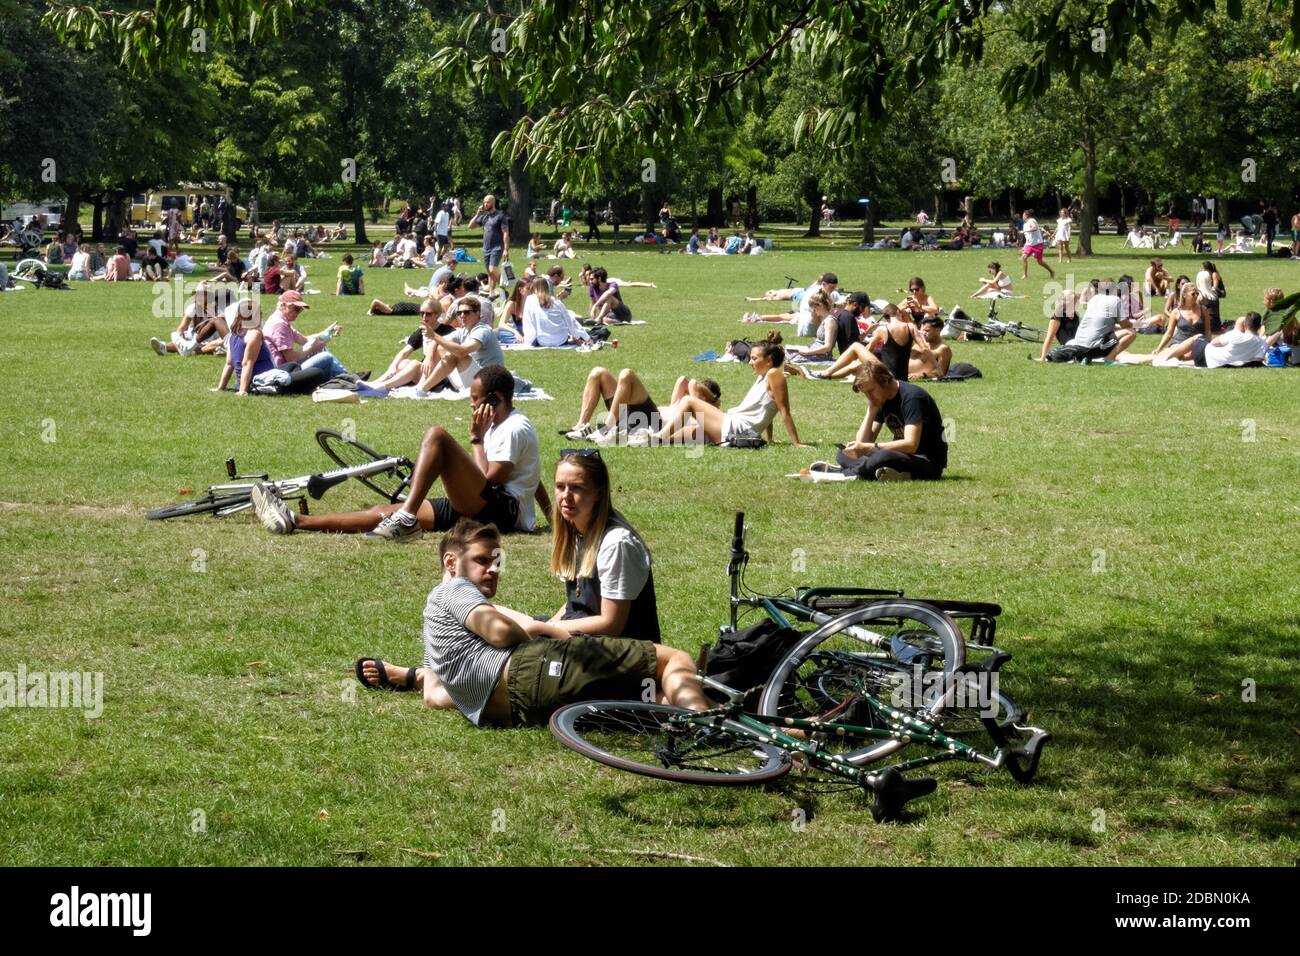 Les jeunes profitent d'une journée ensoleillée à Victoria Park, Londres Angleterre Royaume-Uni Banque D'Images